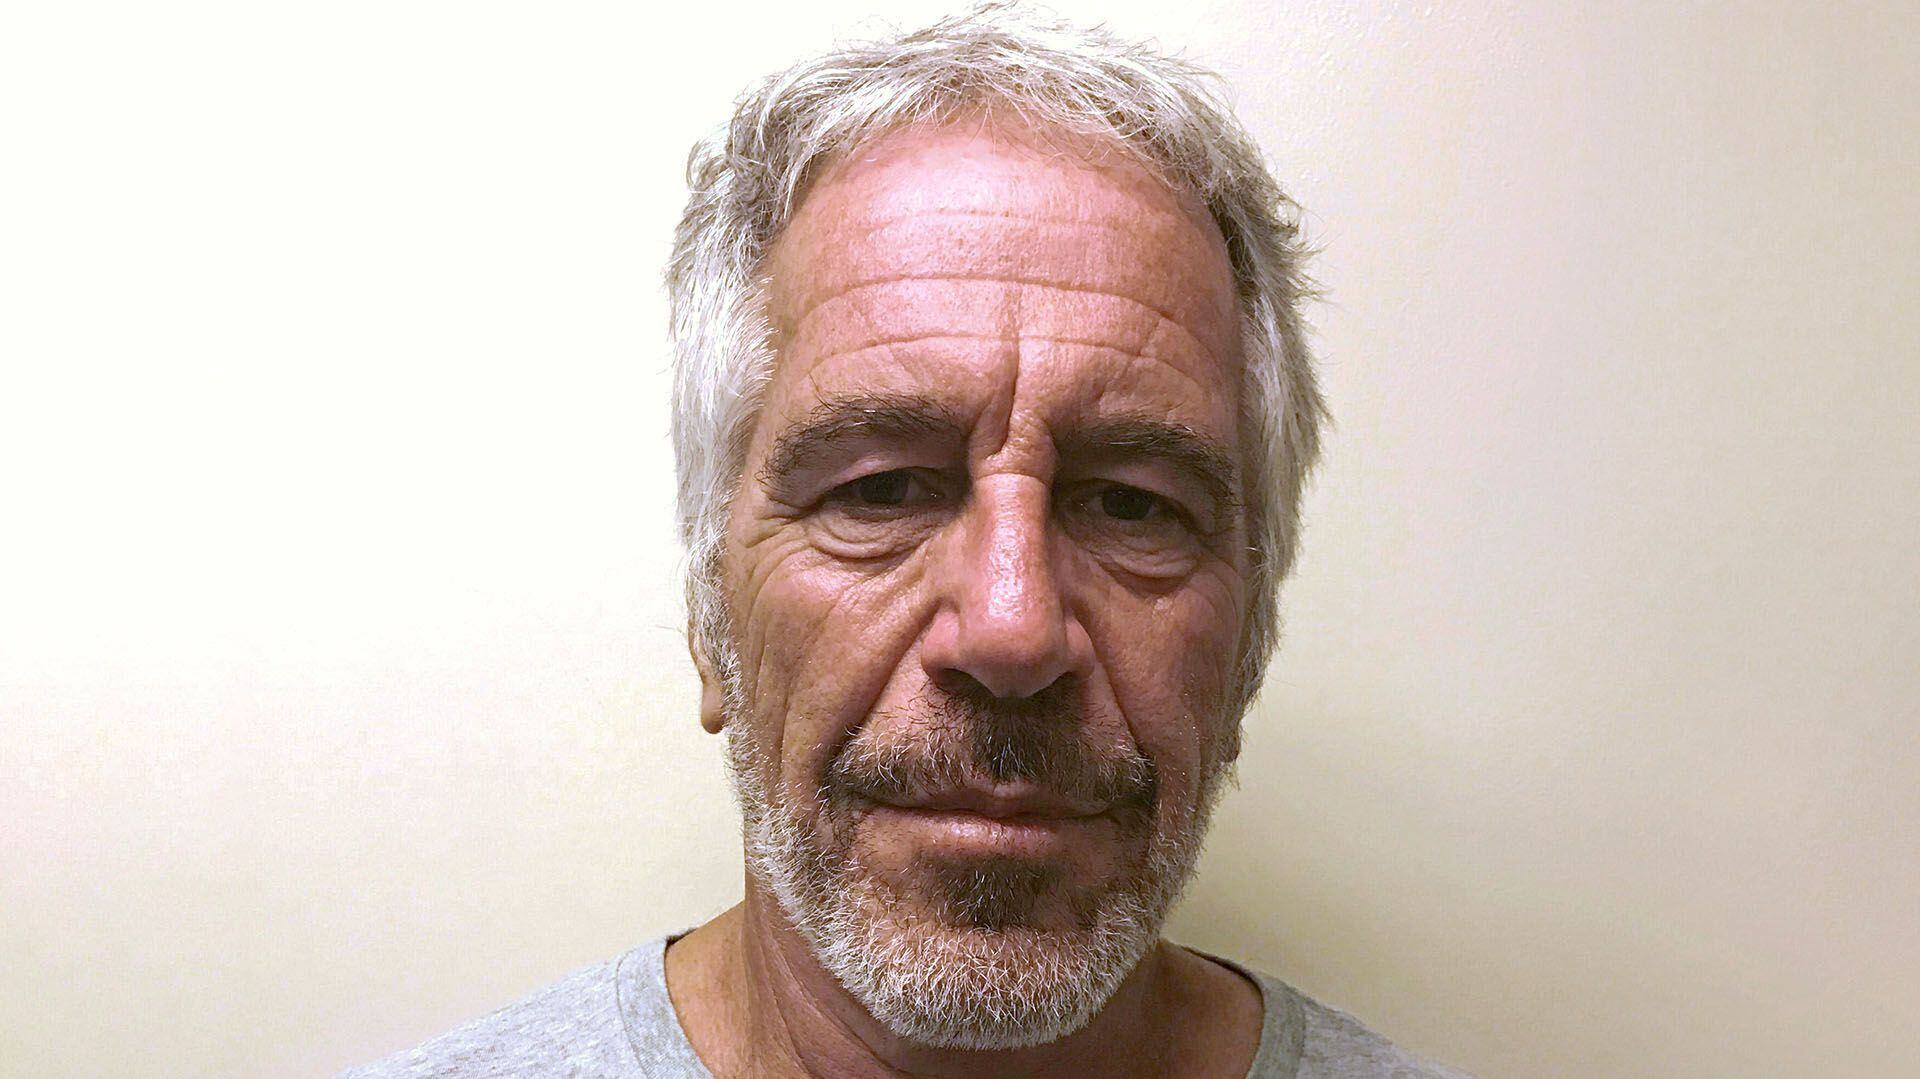 El financista estadounidense Jeffrey Epstein aparece en una fotografía tomada para el registro de delincuentes sexuales de la División de Servicios de Justicia Penal del Estado de Nueva York el 28 de marzo de 2017 y obtenida por Reuters el 10 de julio de 2019 (Reuters)